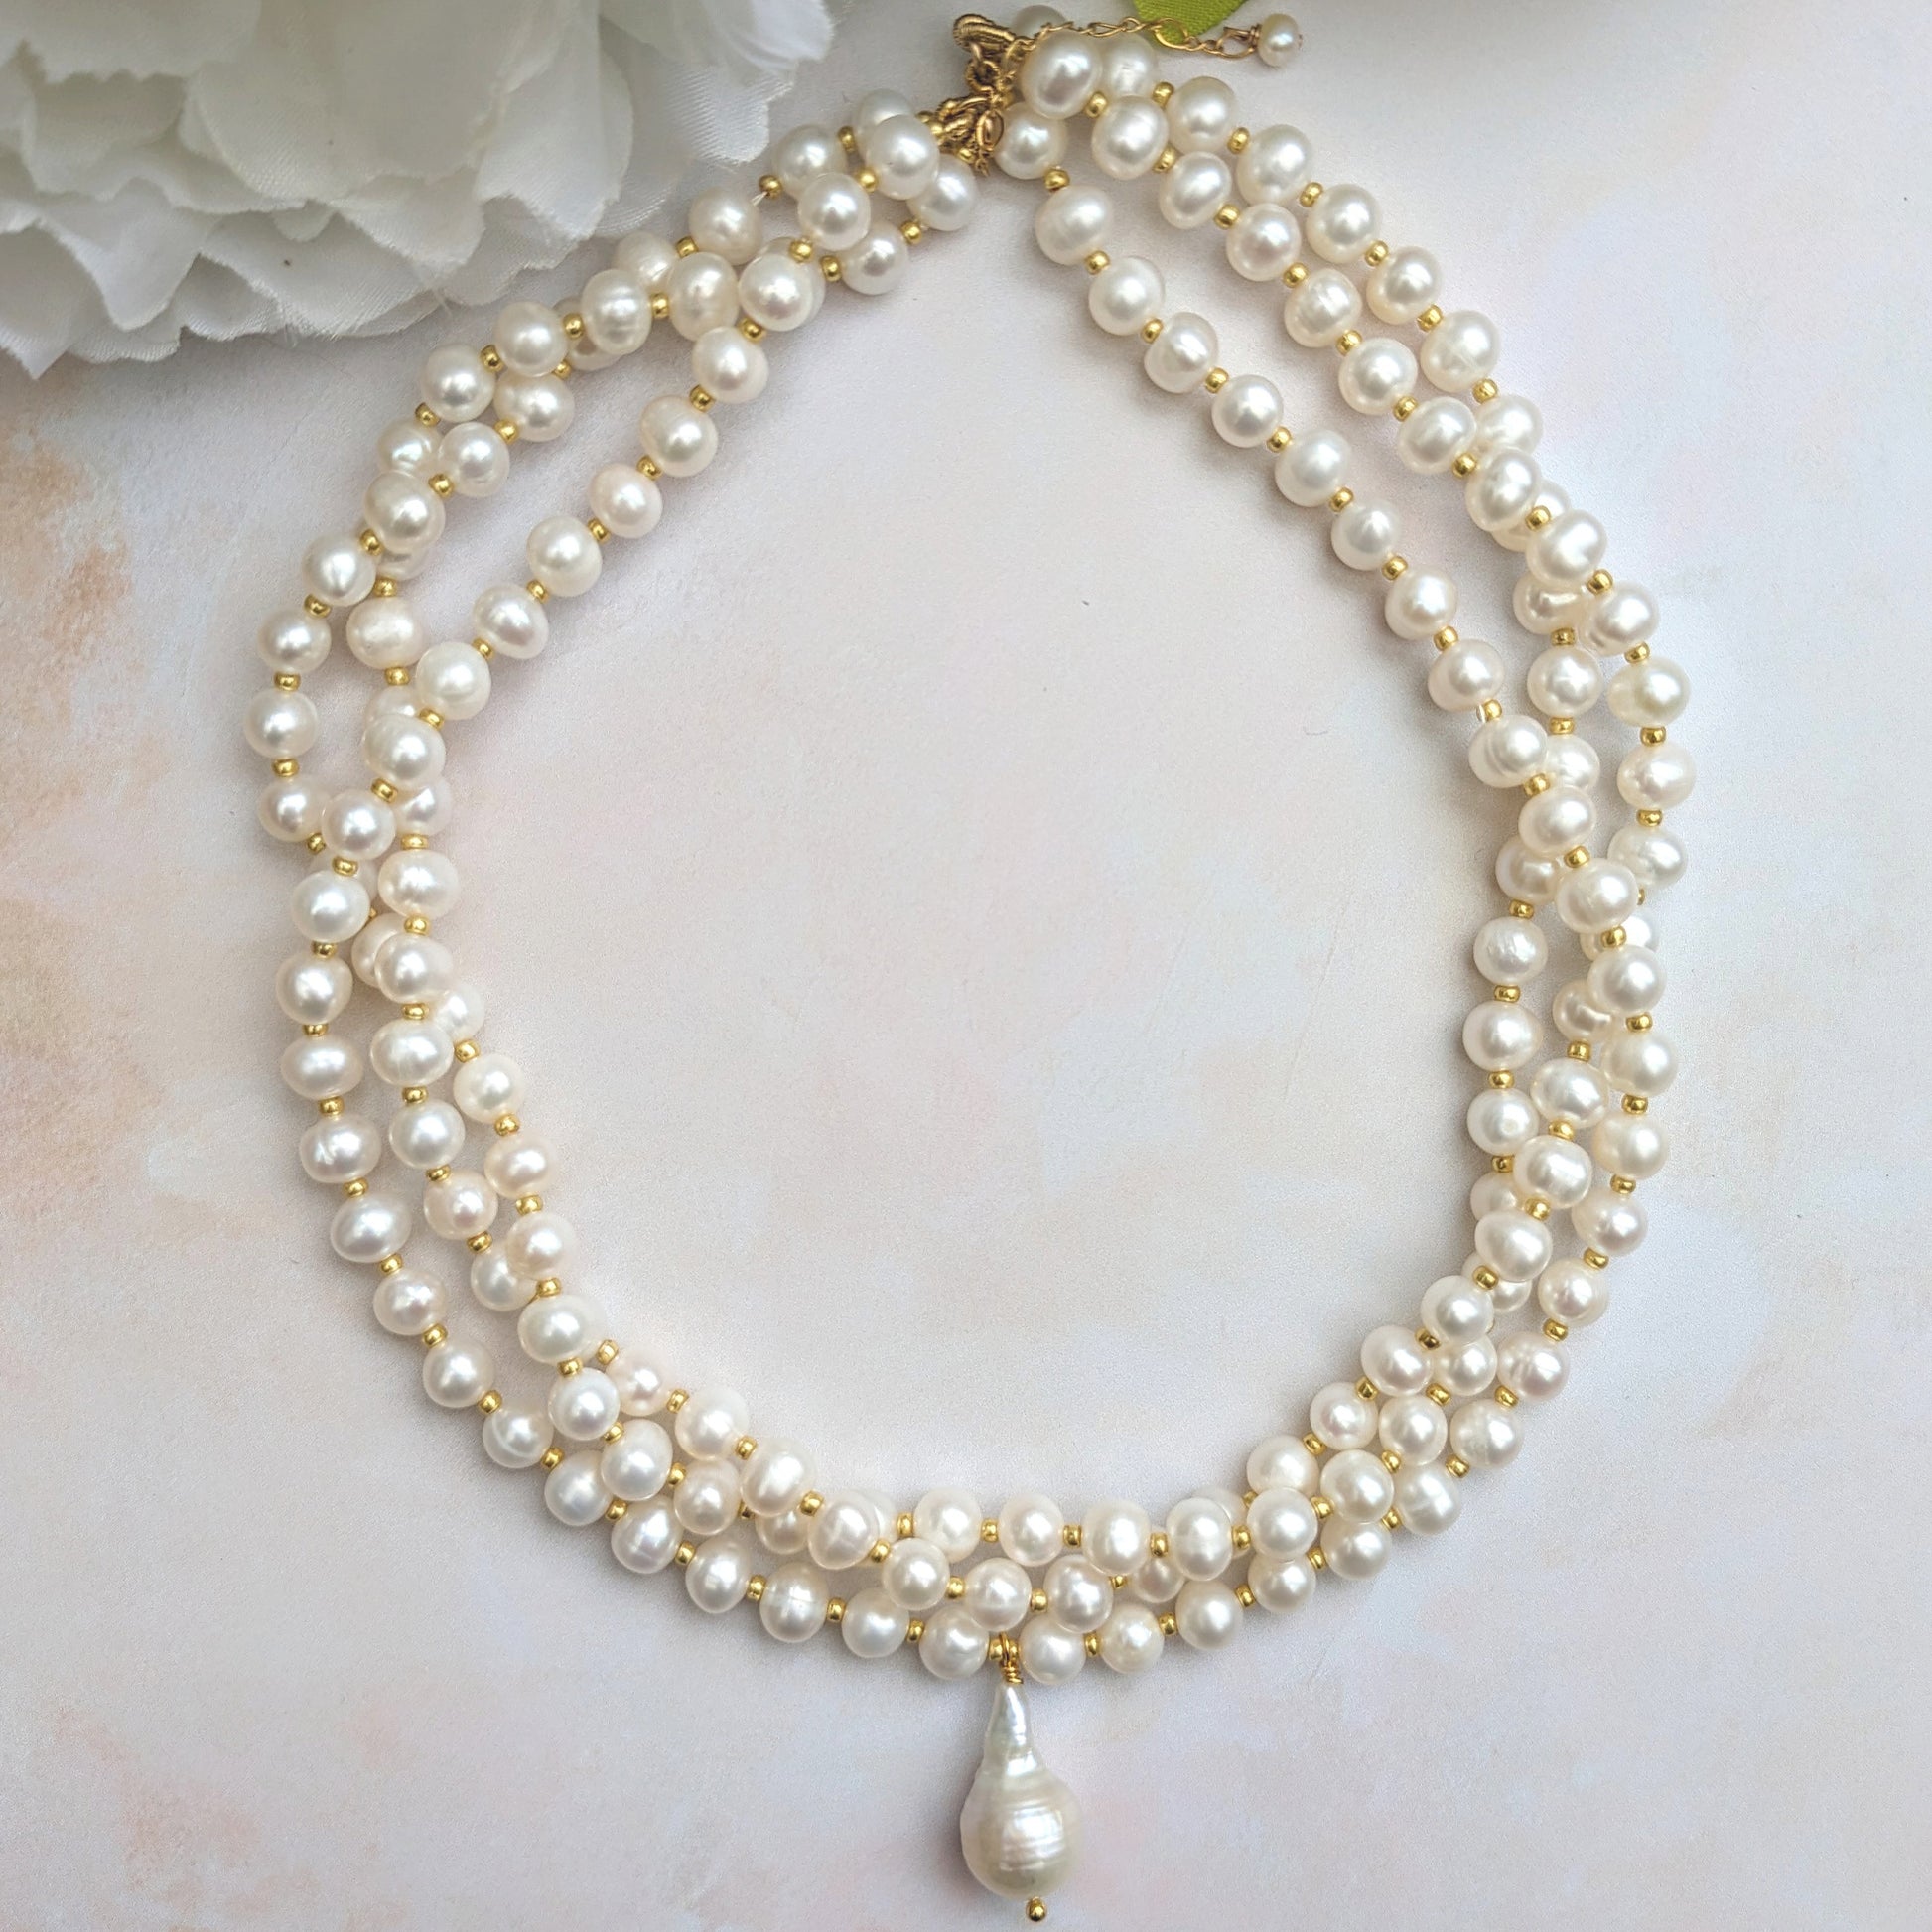 Pearl choker necklace for weddings - Susie Warner